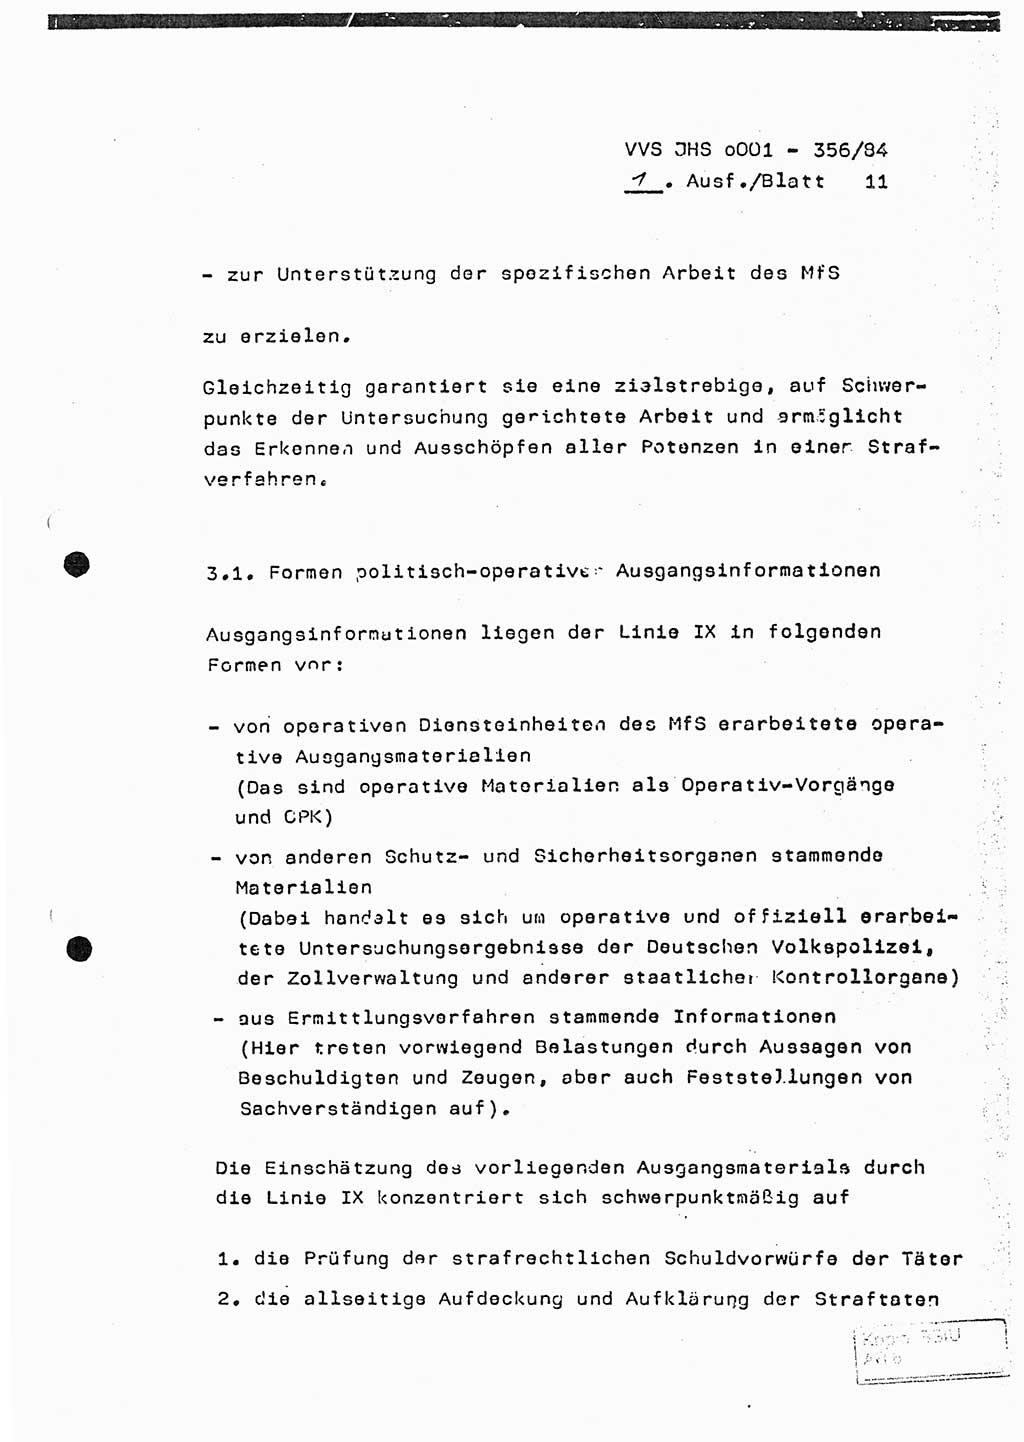 Diplomarbeit, Major Lutz Rahaus (HA Ⅸ/3), Ministerium für Staatssicherheit (MfS) [Deutsche Demokratische Republik (DDR)], Juristische Hochschule (JHS), Vertrauliche Verschlußsache (VVS) o001-356/84, Potsdam 1984, Seite 11 (Dipl.-Arb. MfS DDR JHS VVS o001-356/84 1984, S. 11)